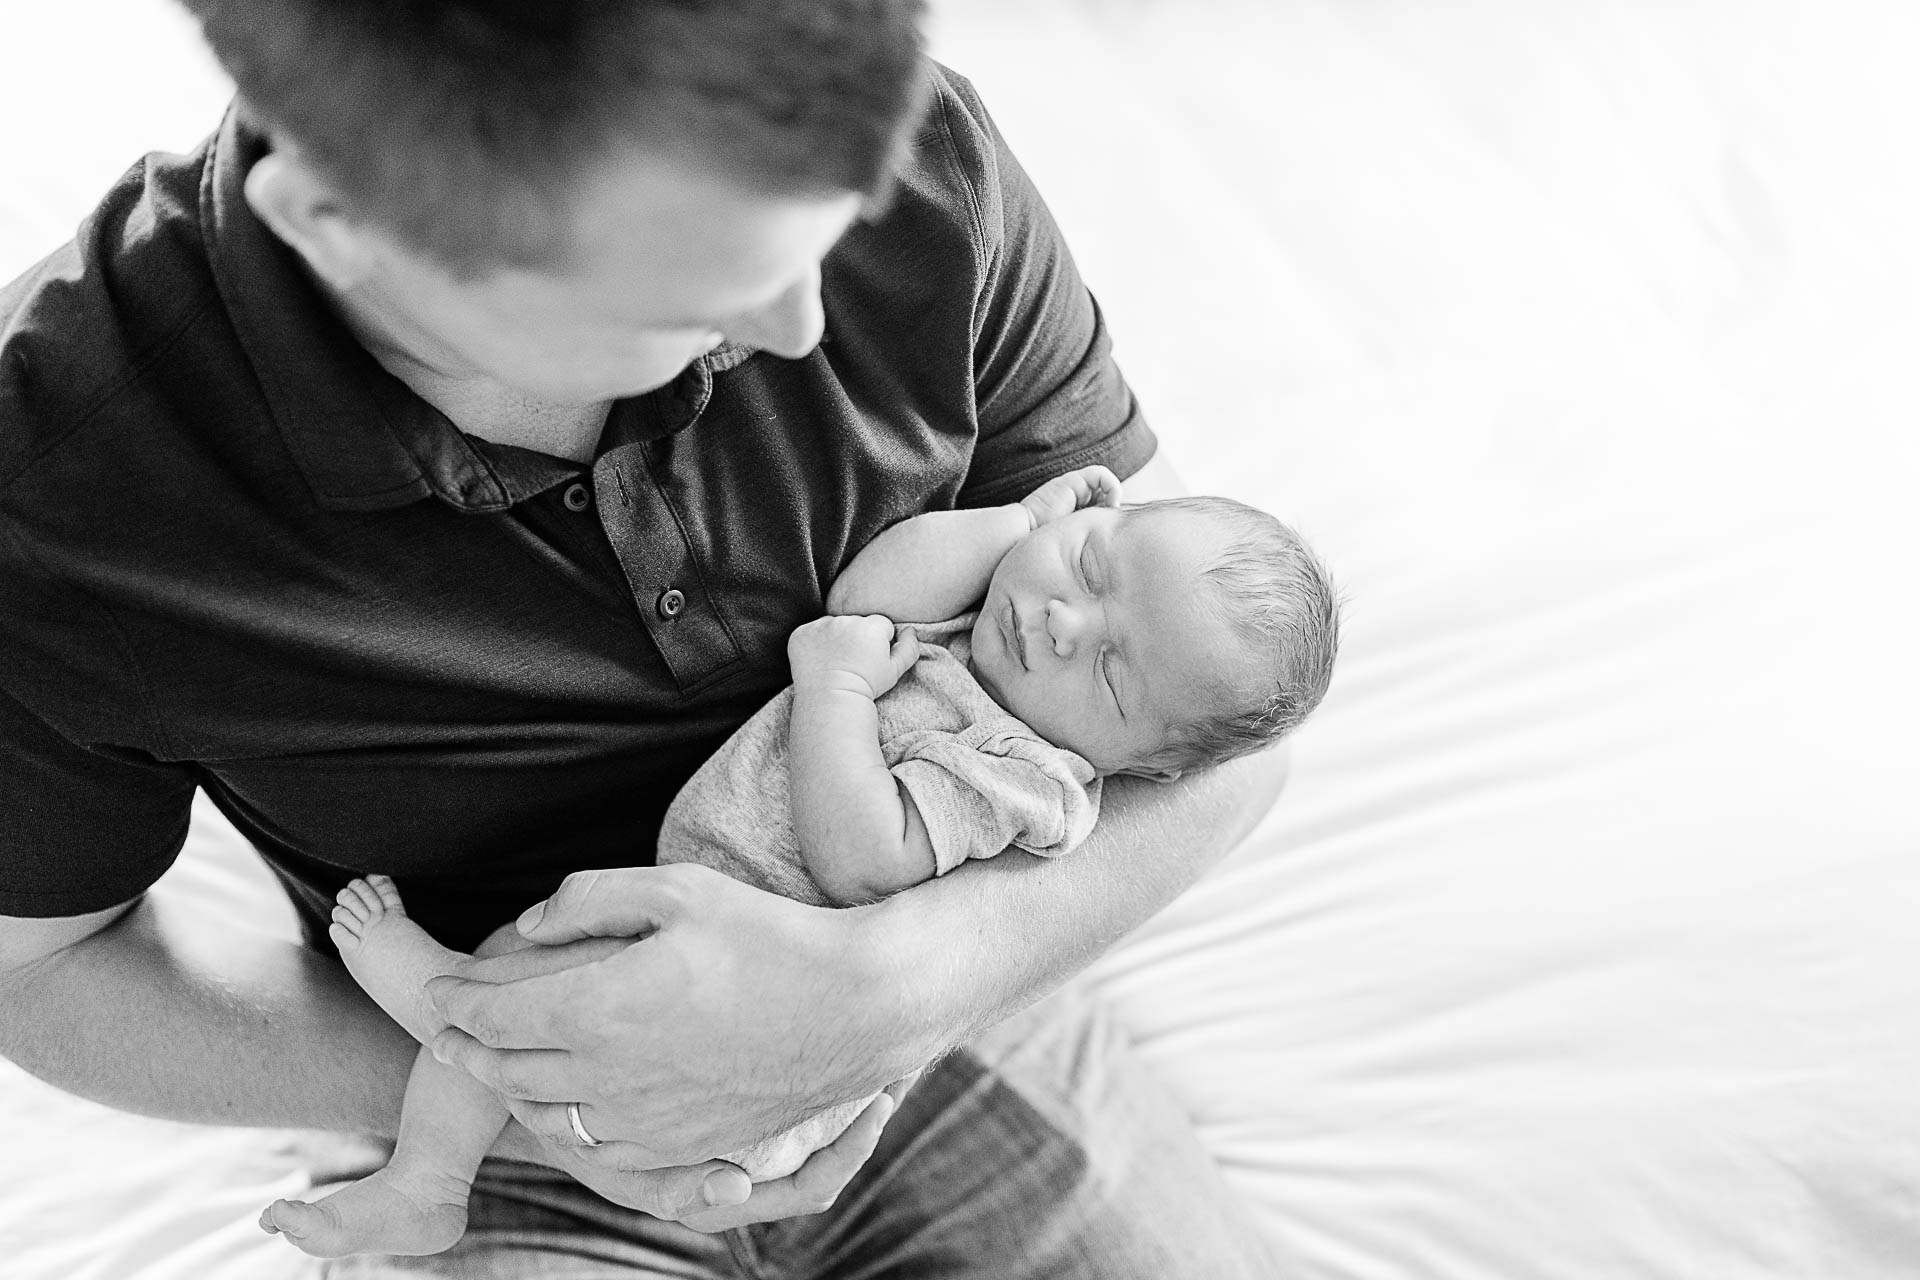 Photo by Weymouth newborn photographer Christina Runnals